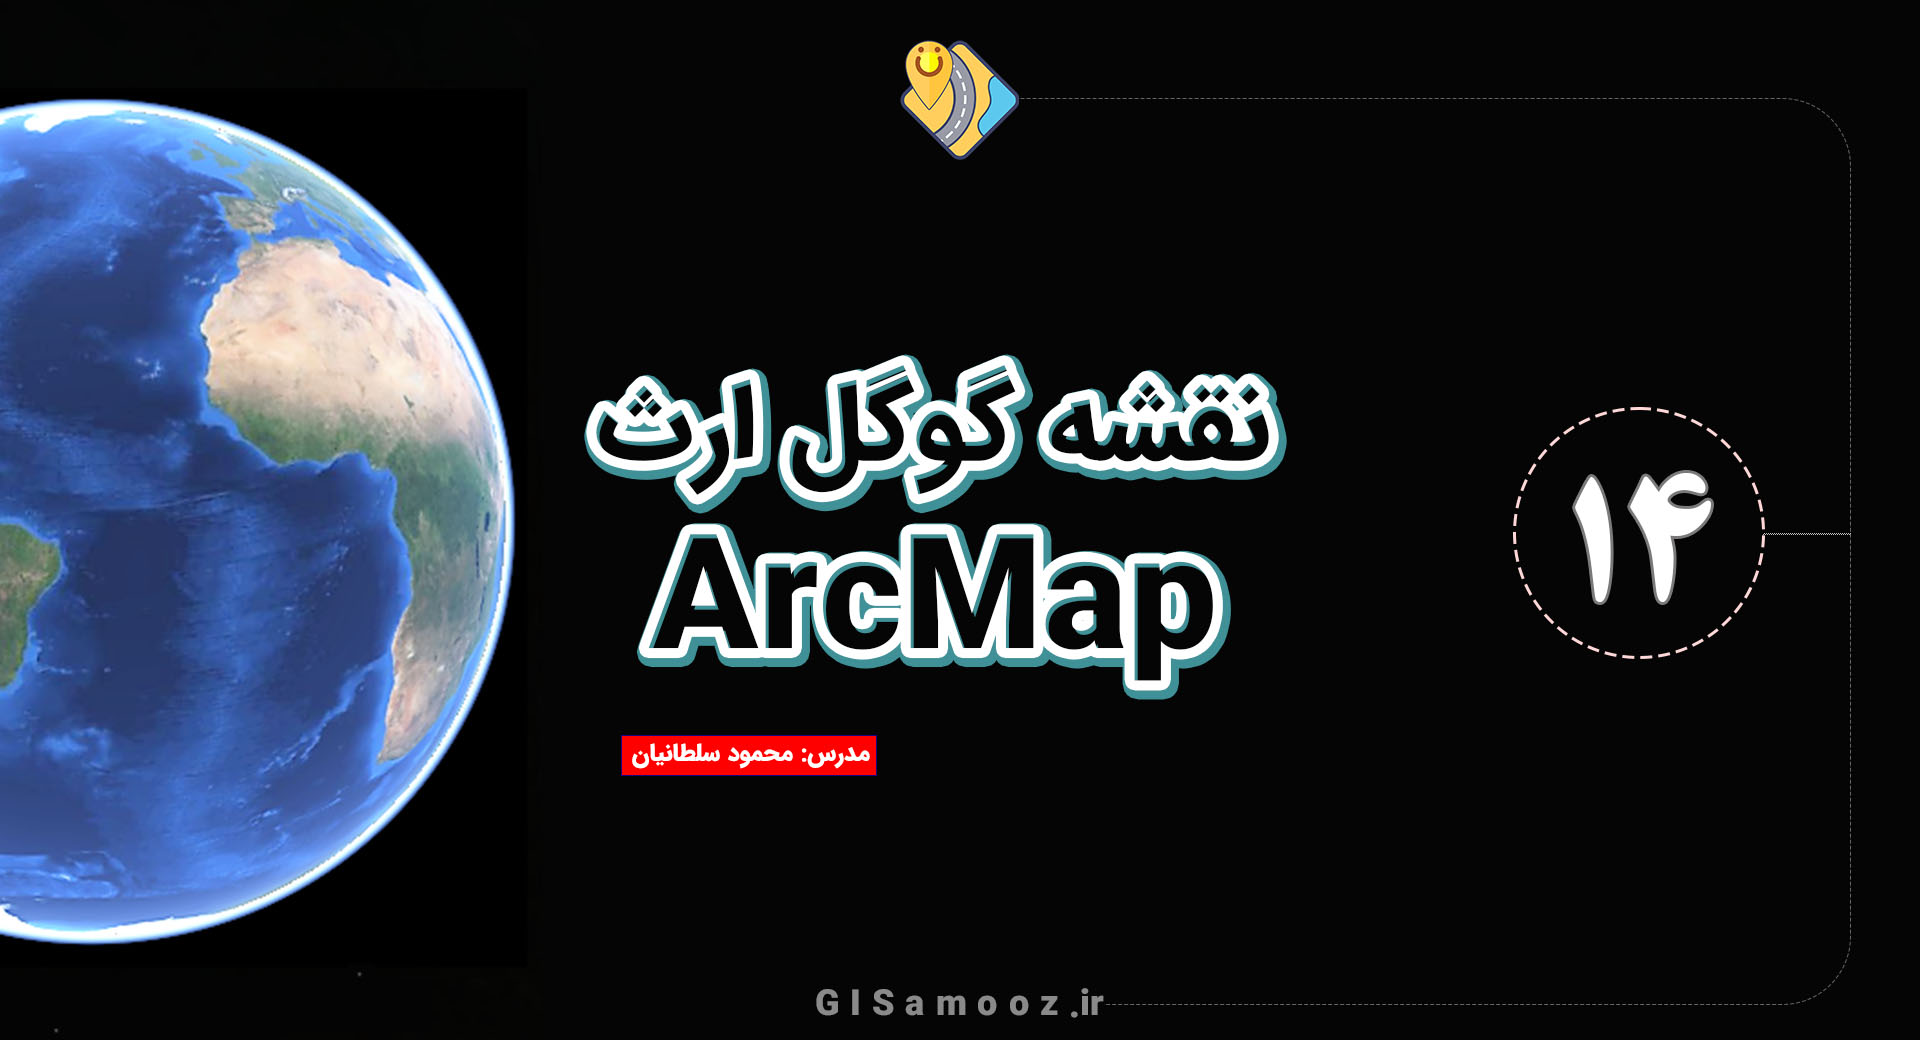 نقشه های گوگل ارث در آرک مپ